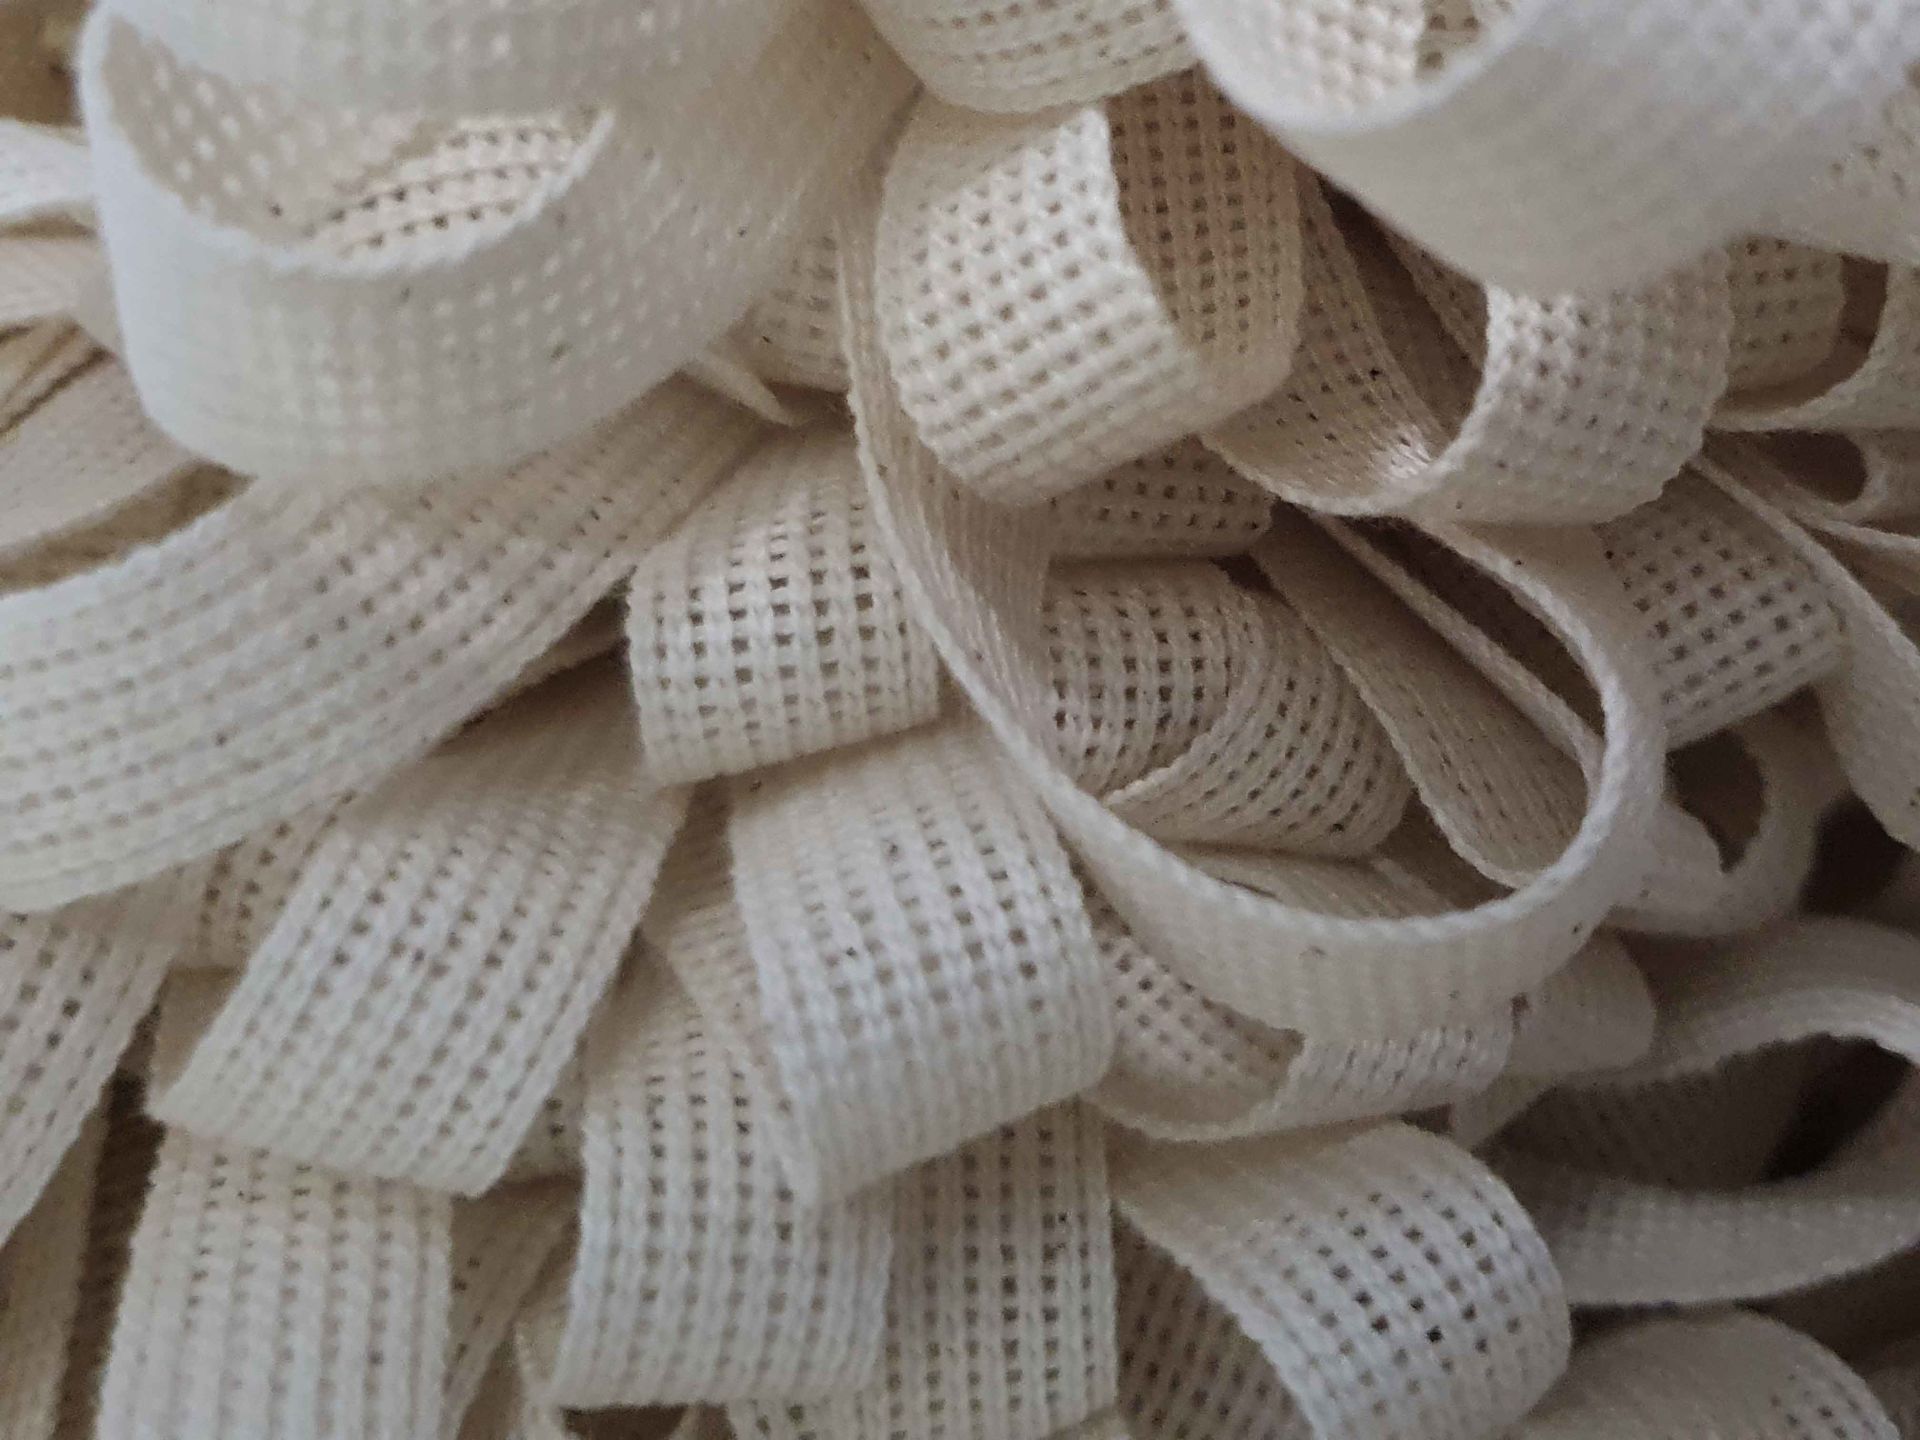 Baumwollband  -  Bindeband  -  16 mm  -  25 Meter  -  Naturweiß - Beige  -  Zum Verpacken und Dekorieren